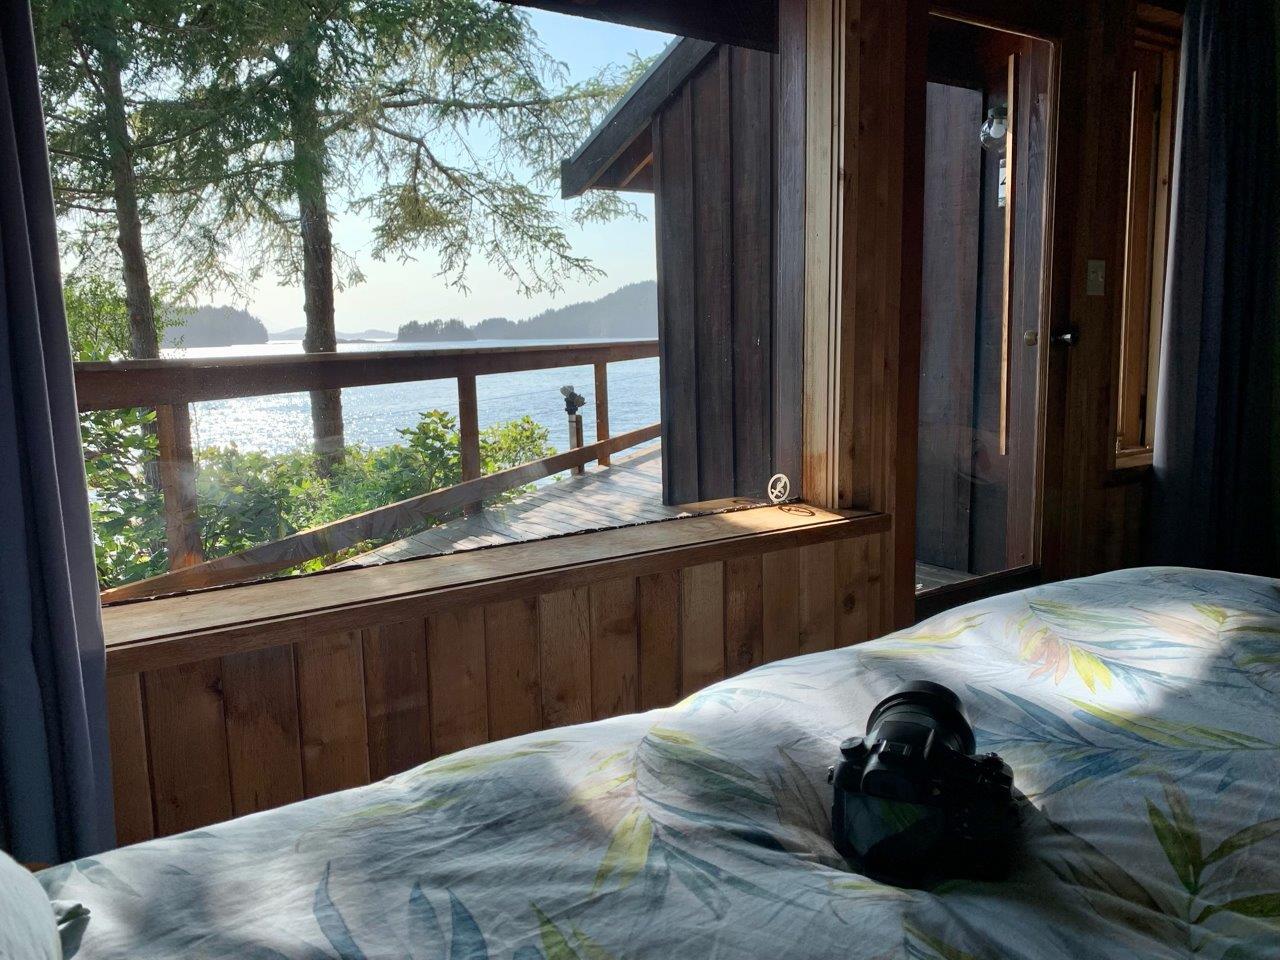 ایک آرام دہ بستر سے خوبصورت نظارہ - تصویر کیرول پیٹرسن